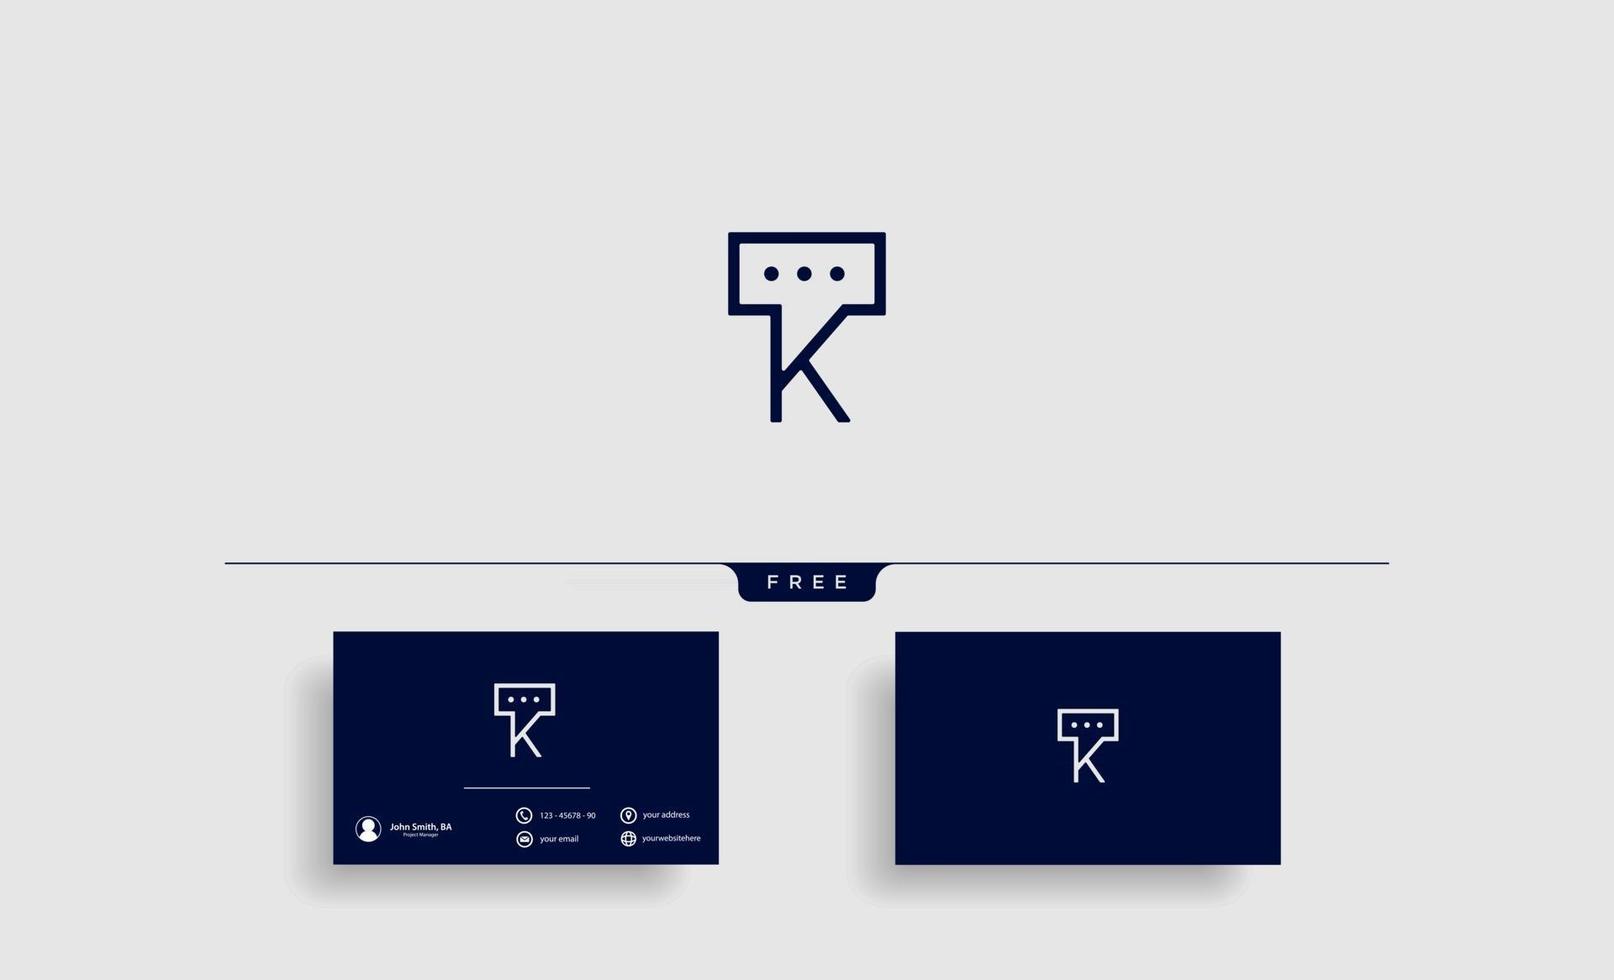 letter k chat logo vector sjabloonontwerp